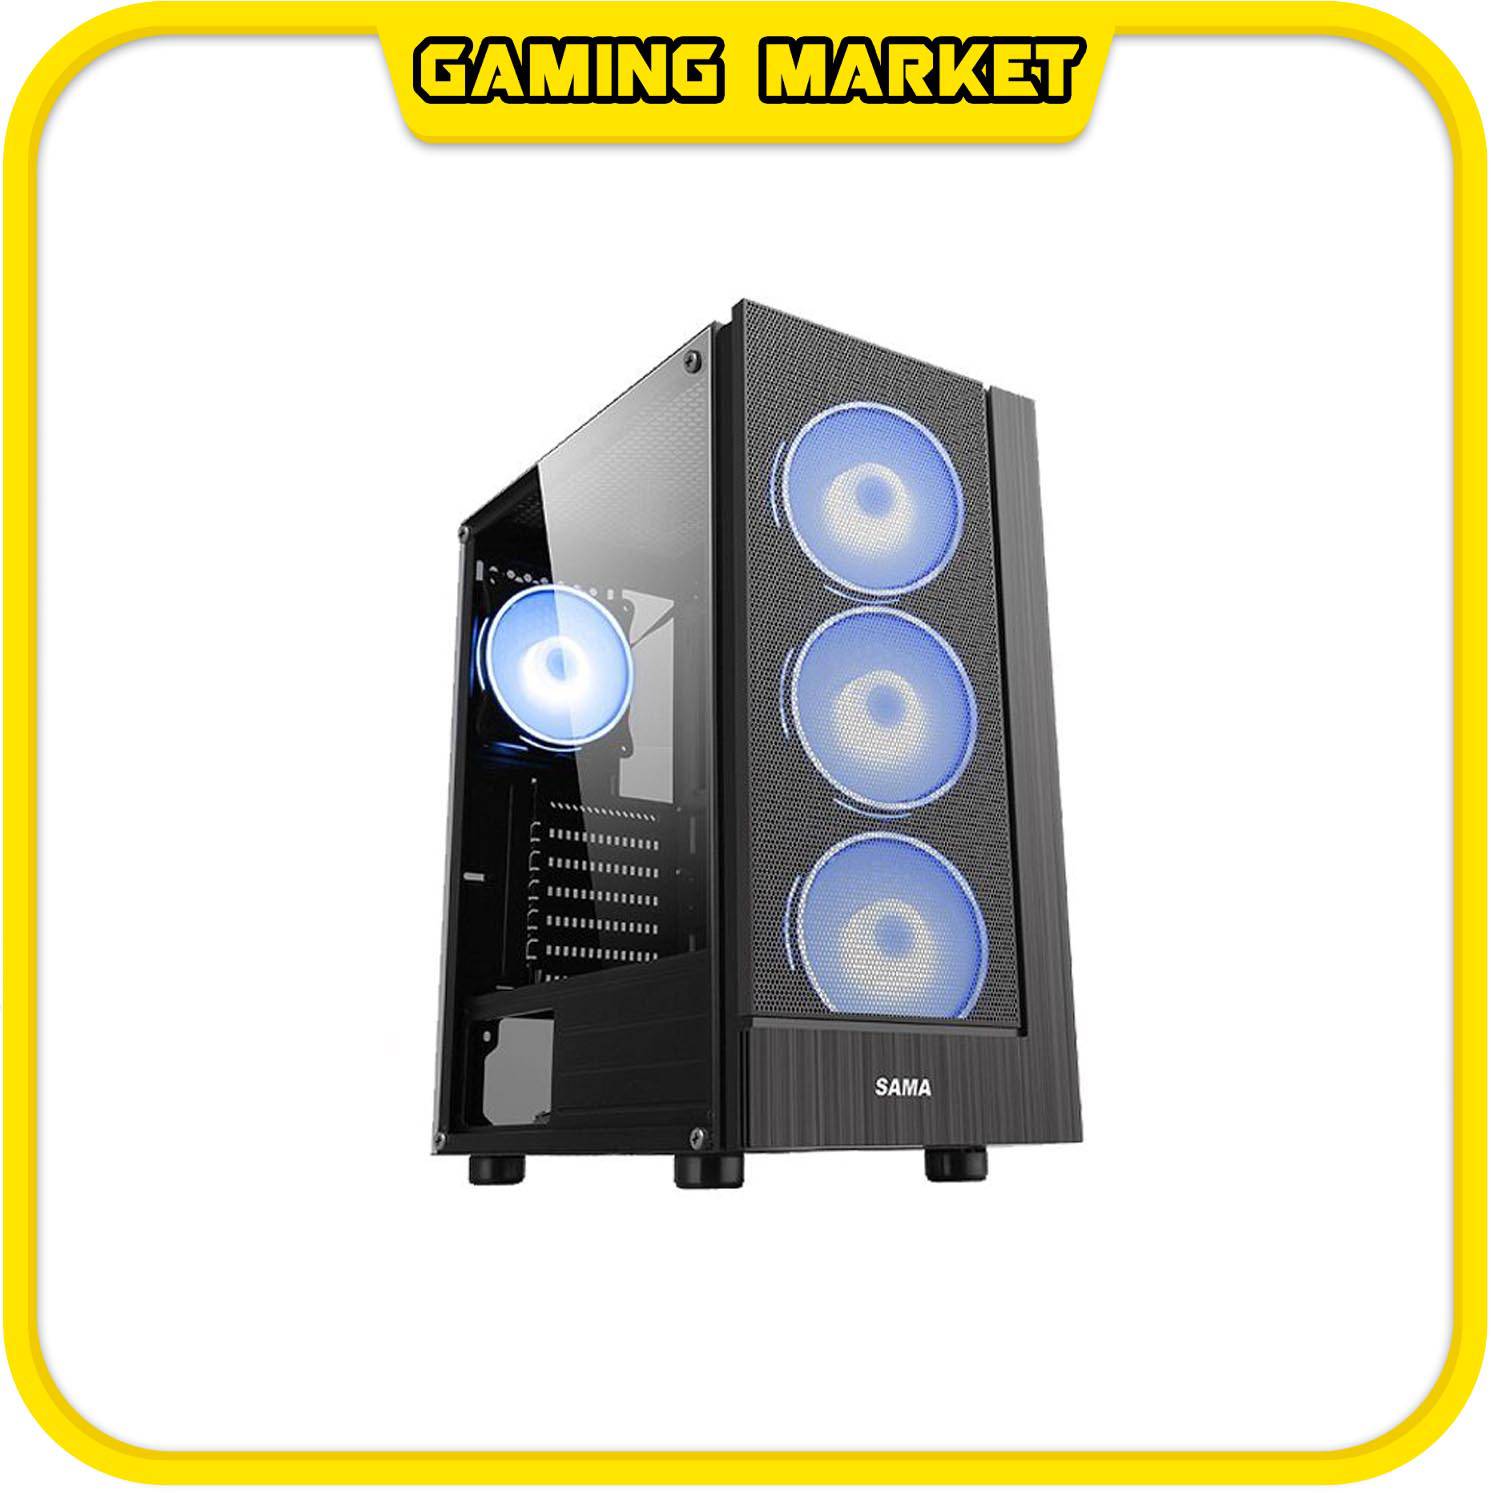 PC CHƠI GAME, ĐỒ HOẠ I5 9400F/RAM 16G/VGA COLORFUL 1660 6G SUPER